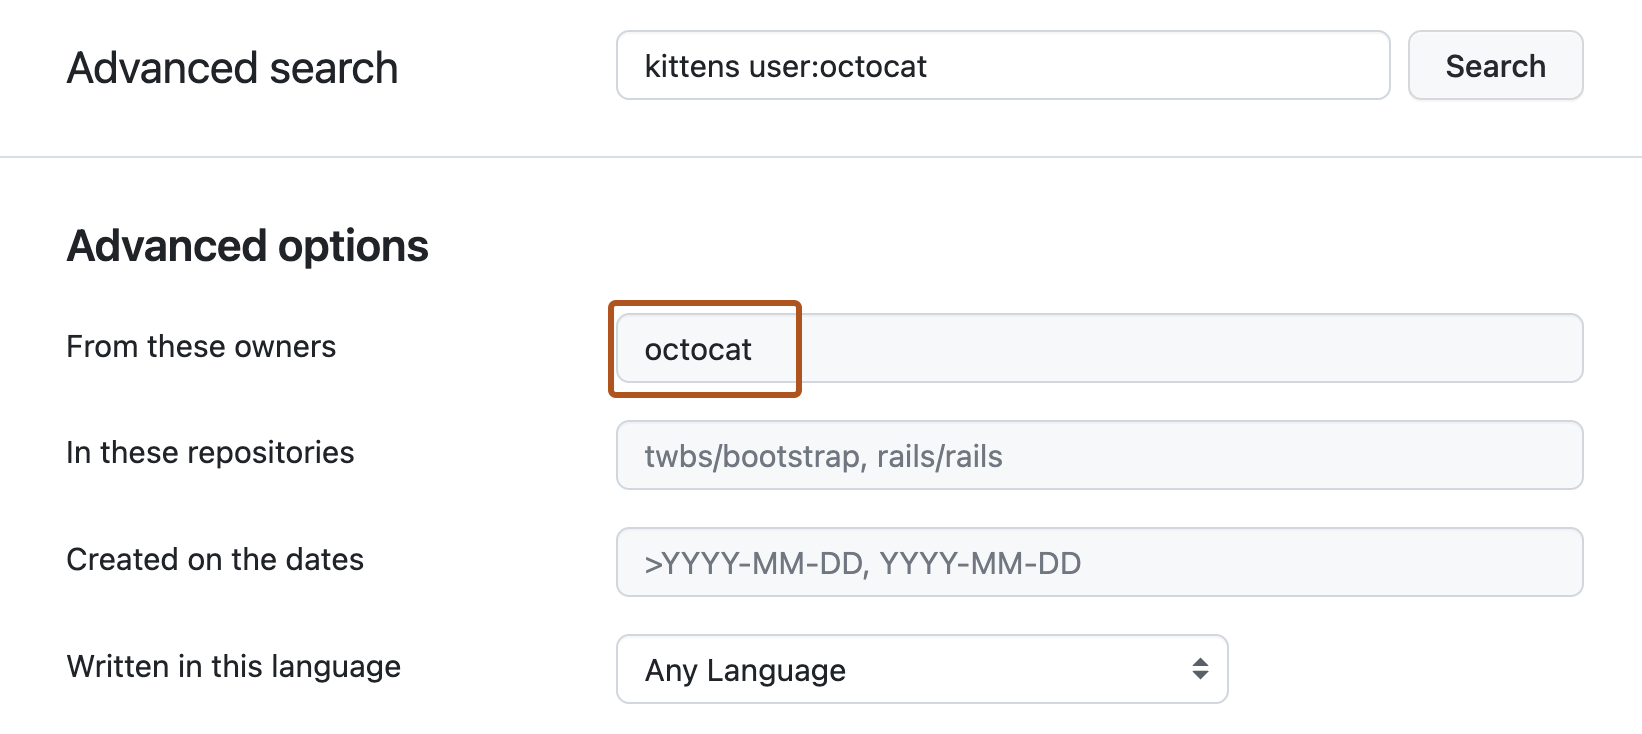 “高级搜索”页。 顶部搜索栏包含“kittens user:octocat”查询。 在“高级选项”下，“来自以下所有者”文本框中包含术语“octocat”。